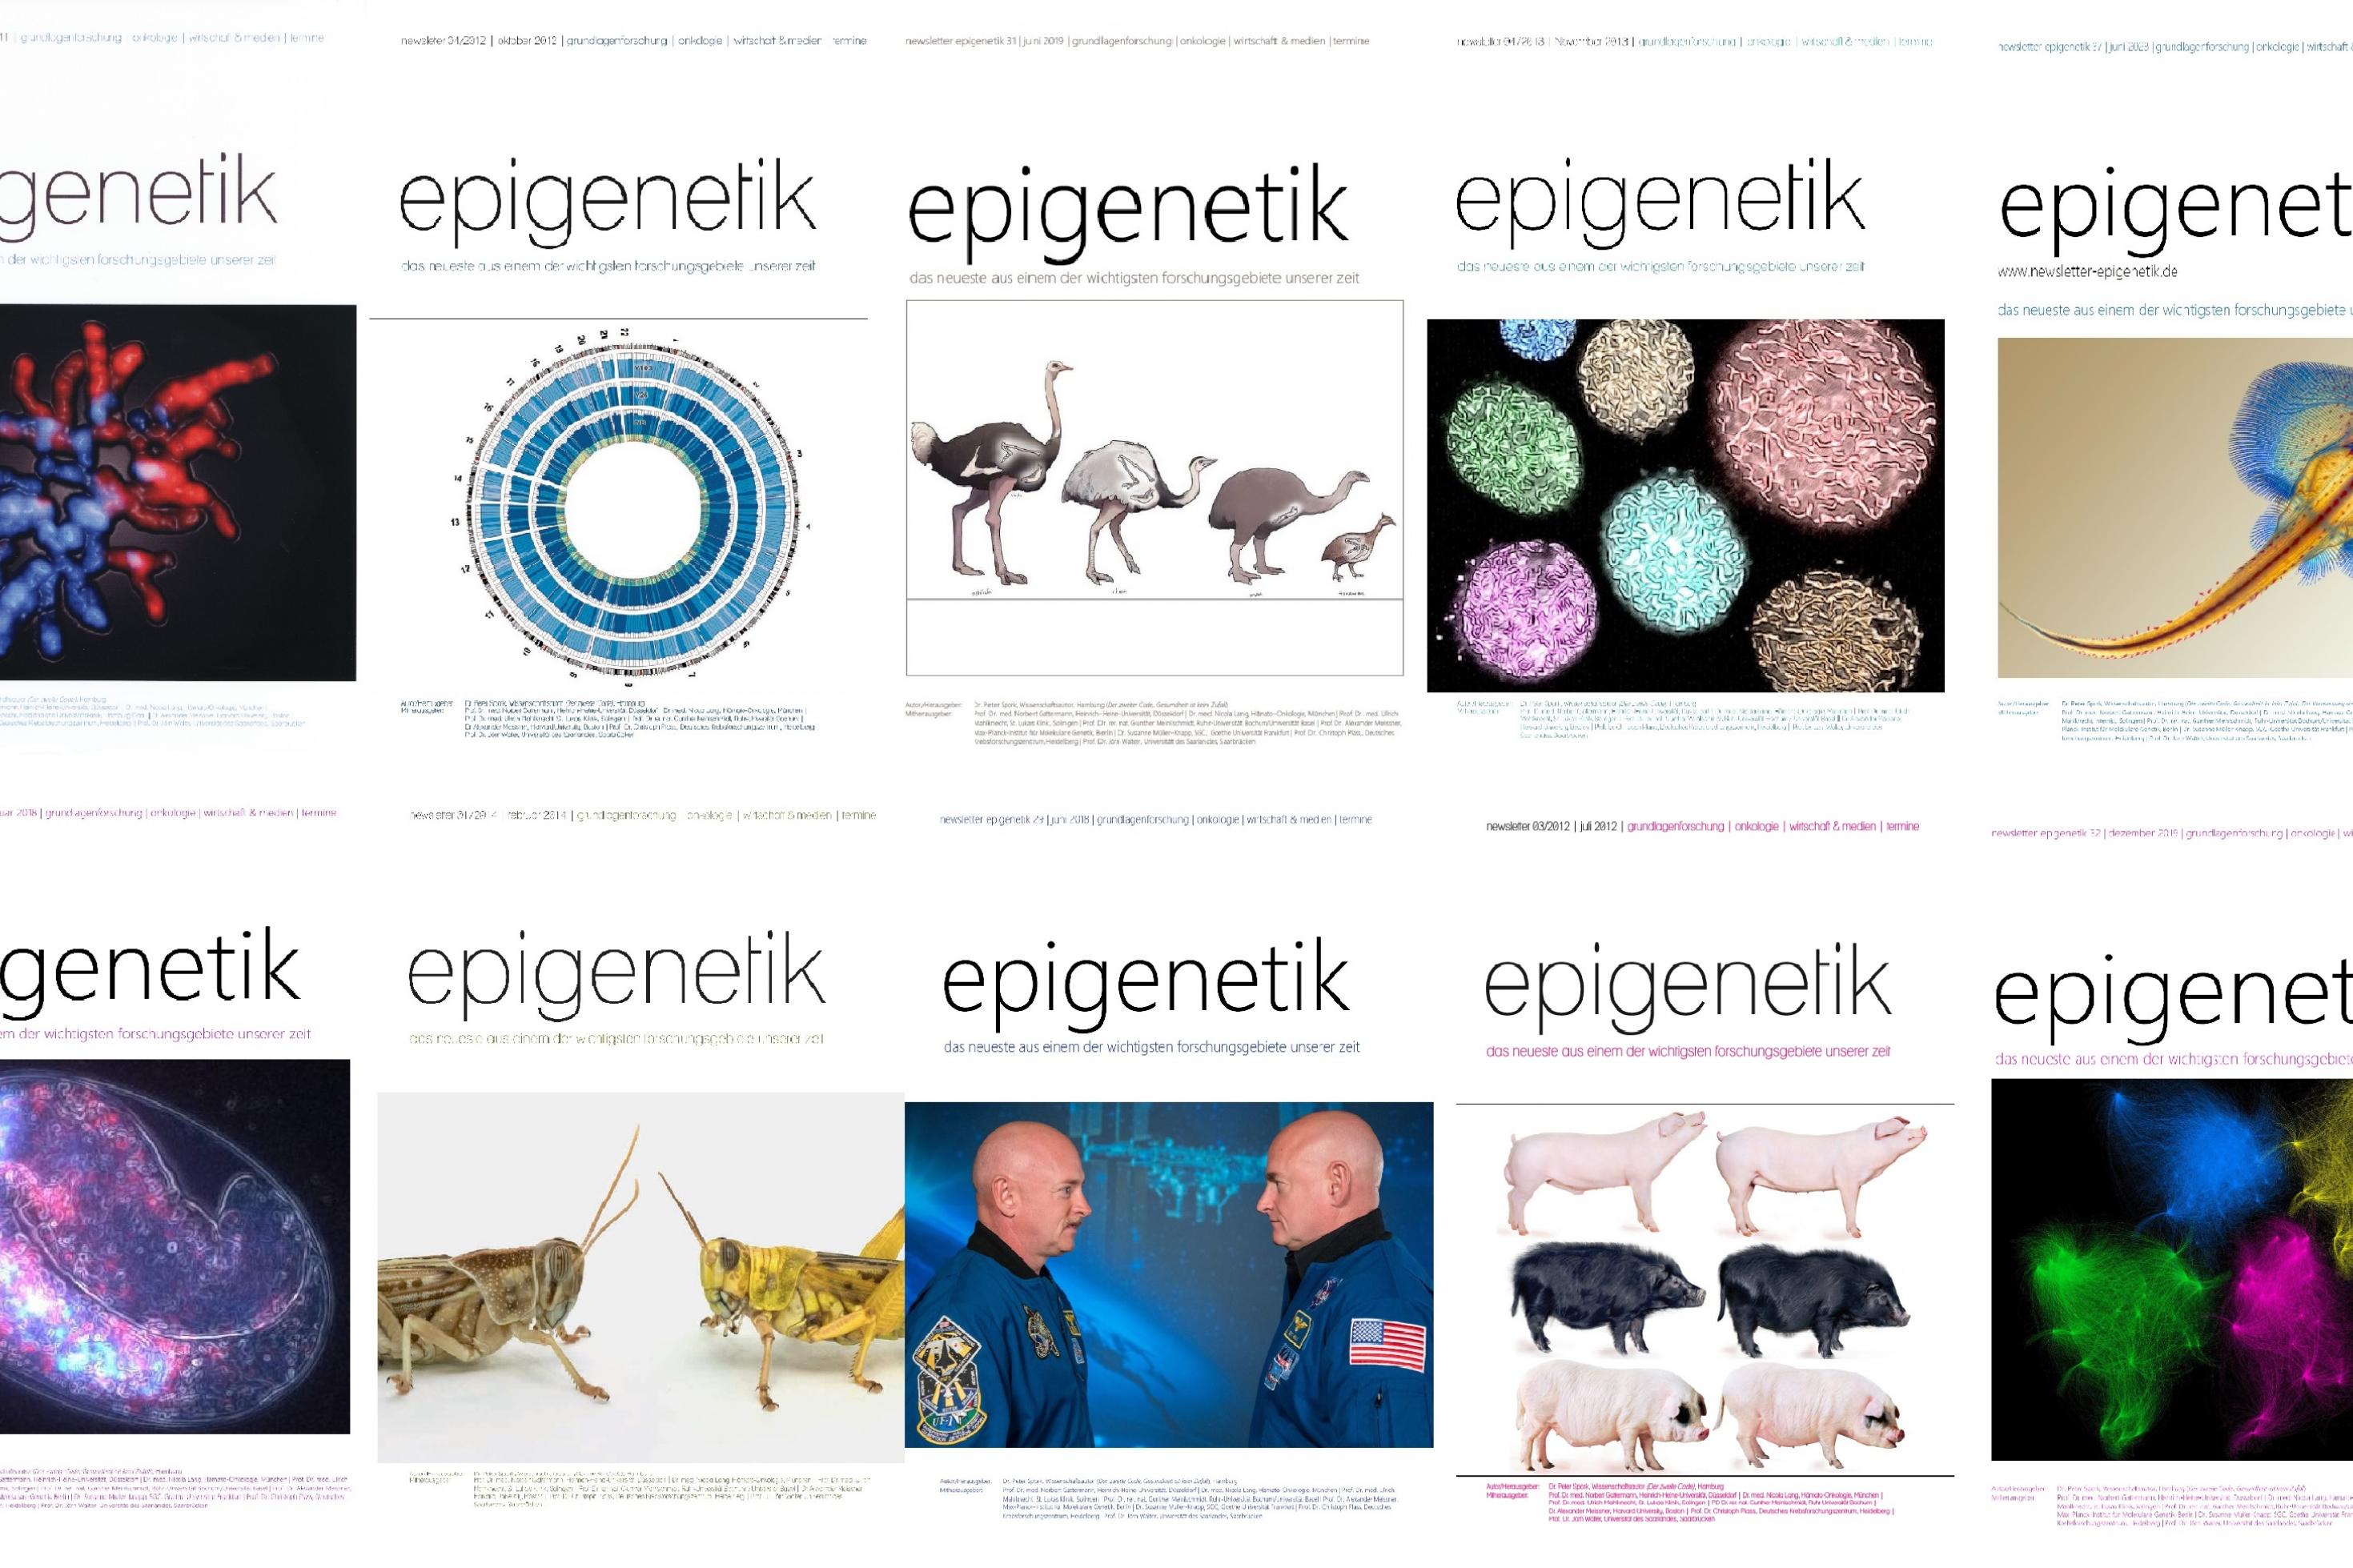 Zwei Reihen mit Magazin-Titelbildern, die teilweise mikroskopische Aufnahmen oder genetische Daten, aber auch Tiere wie Schweine, Heuschrecken oder Rochen zeigen.